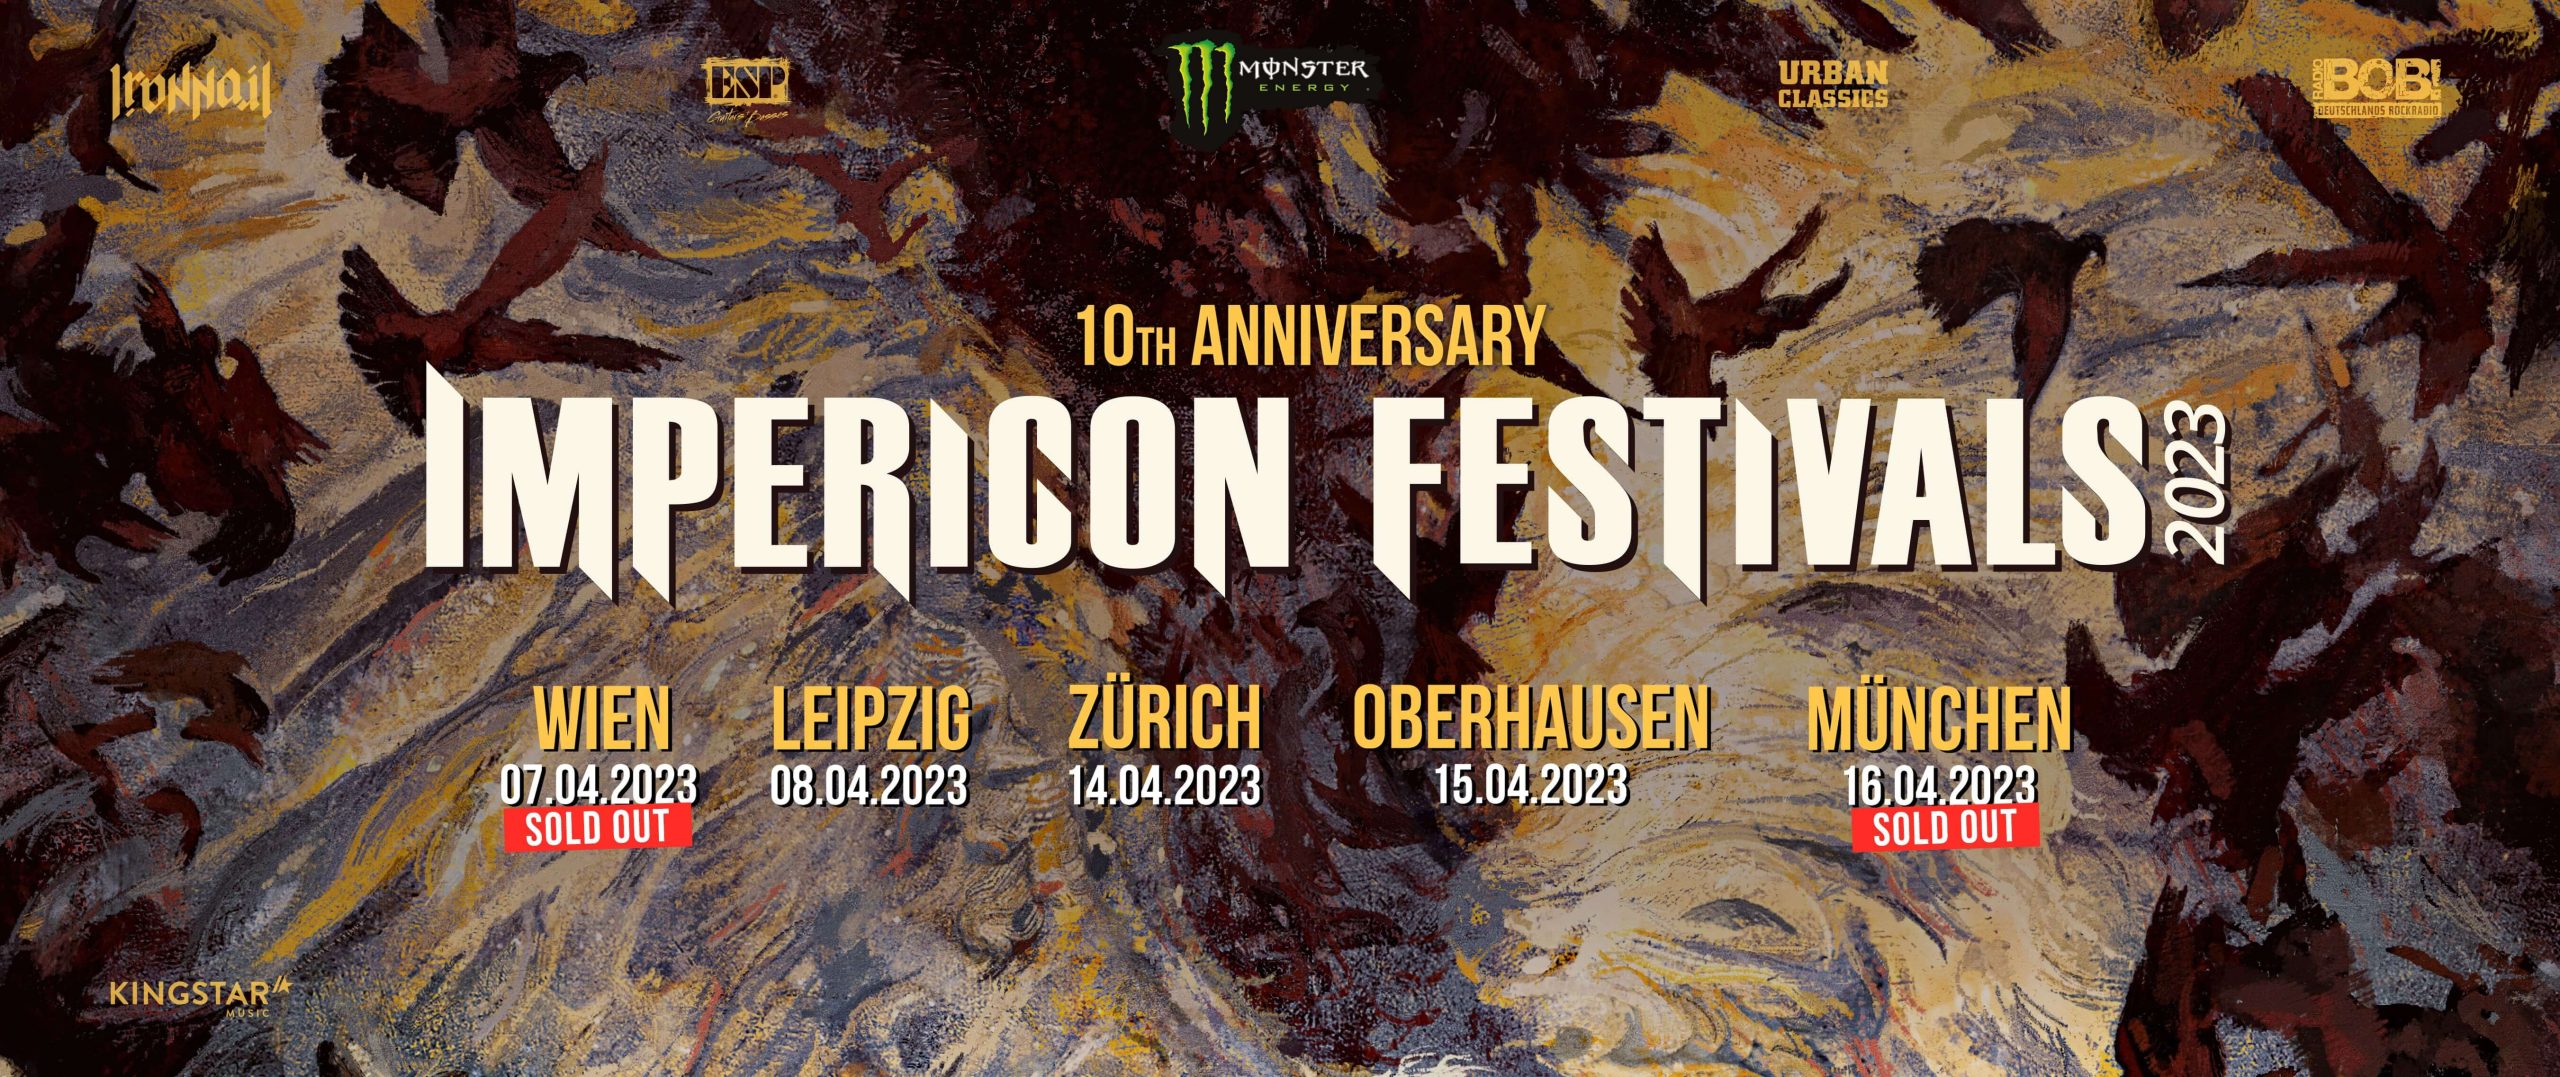 Impericon Festival 2023 am 7. April 2023 @ Arena Wien.